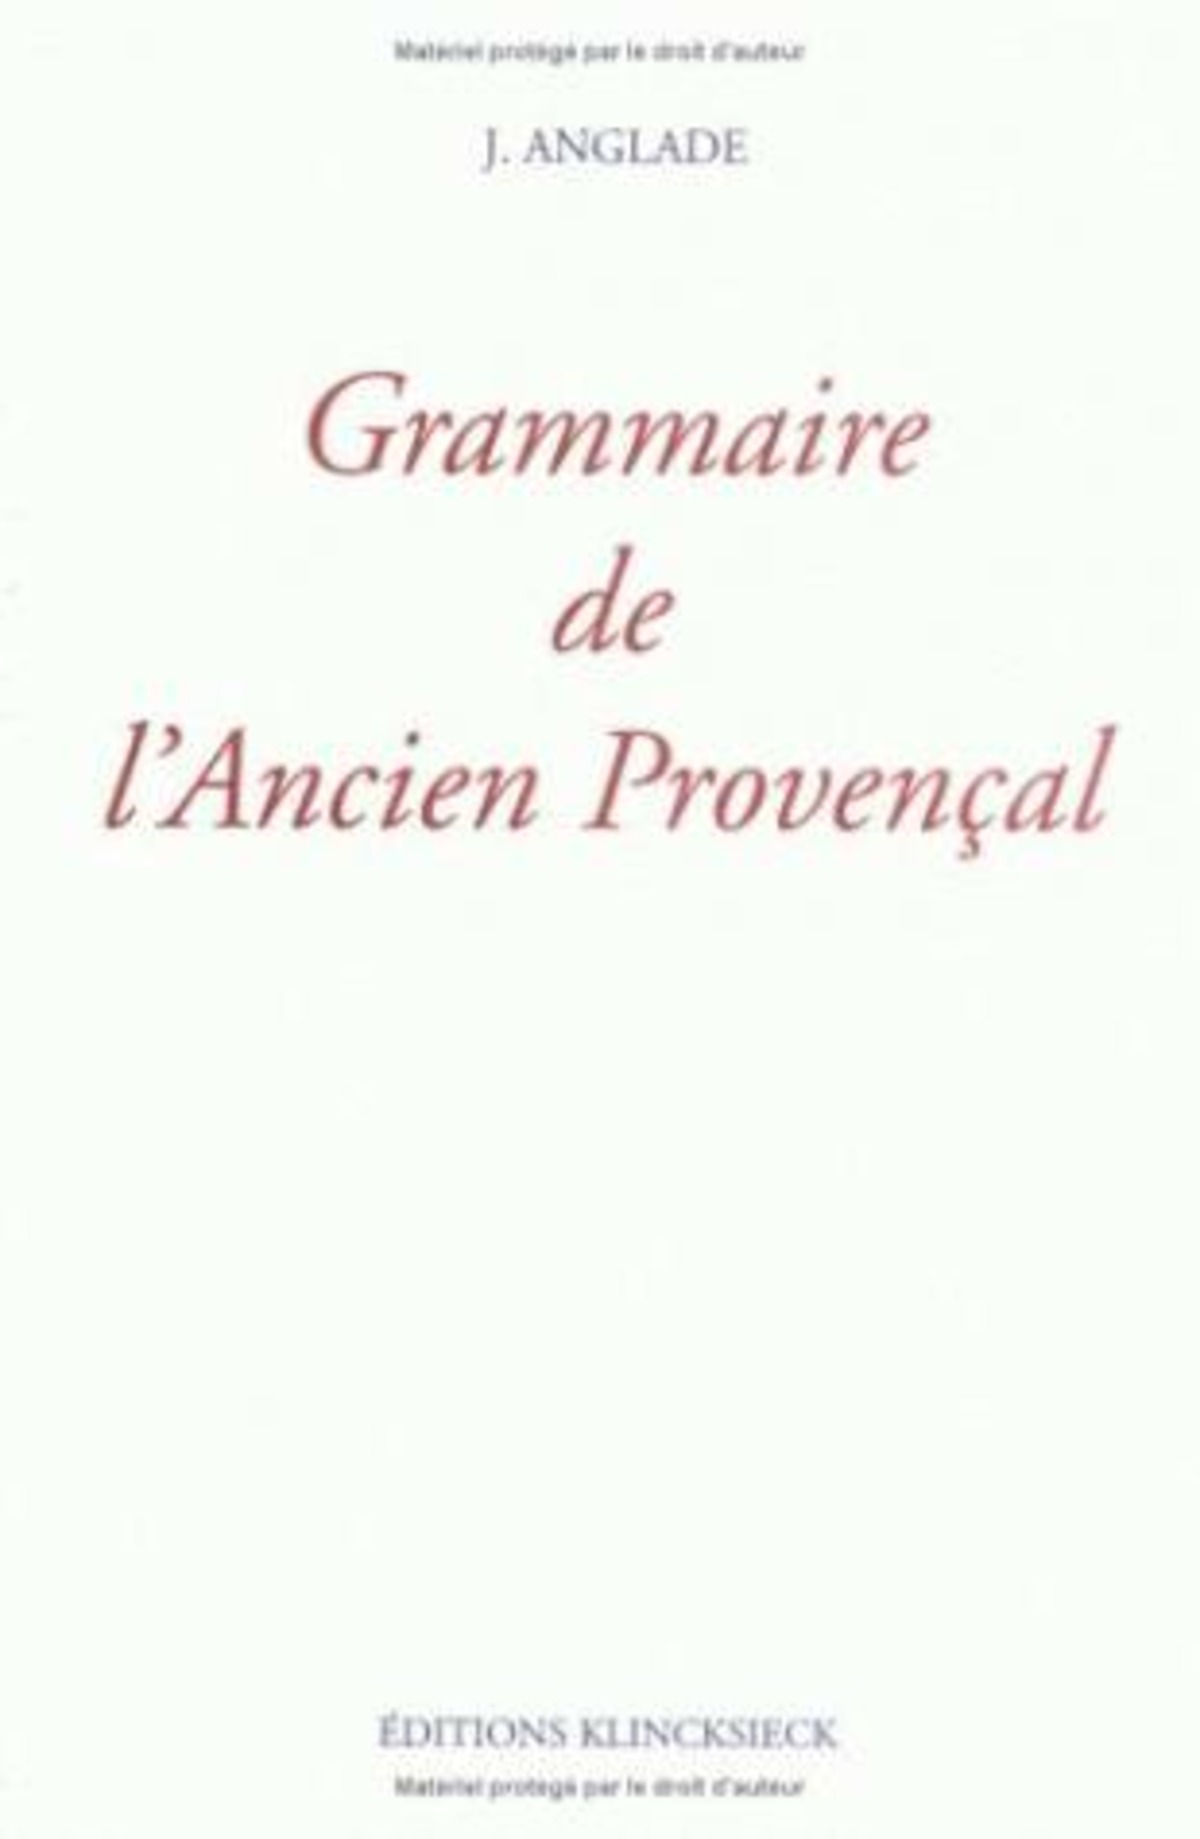 Grammaire de l'ancien provençal